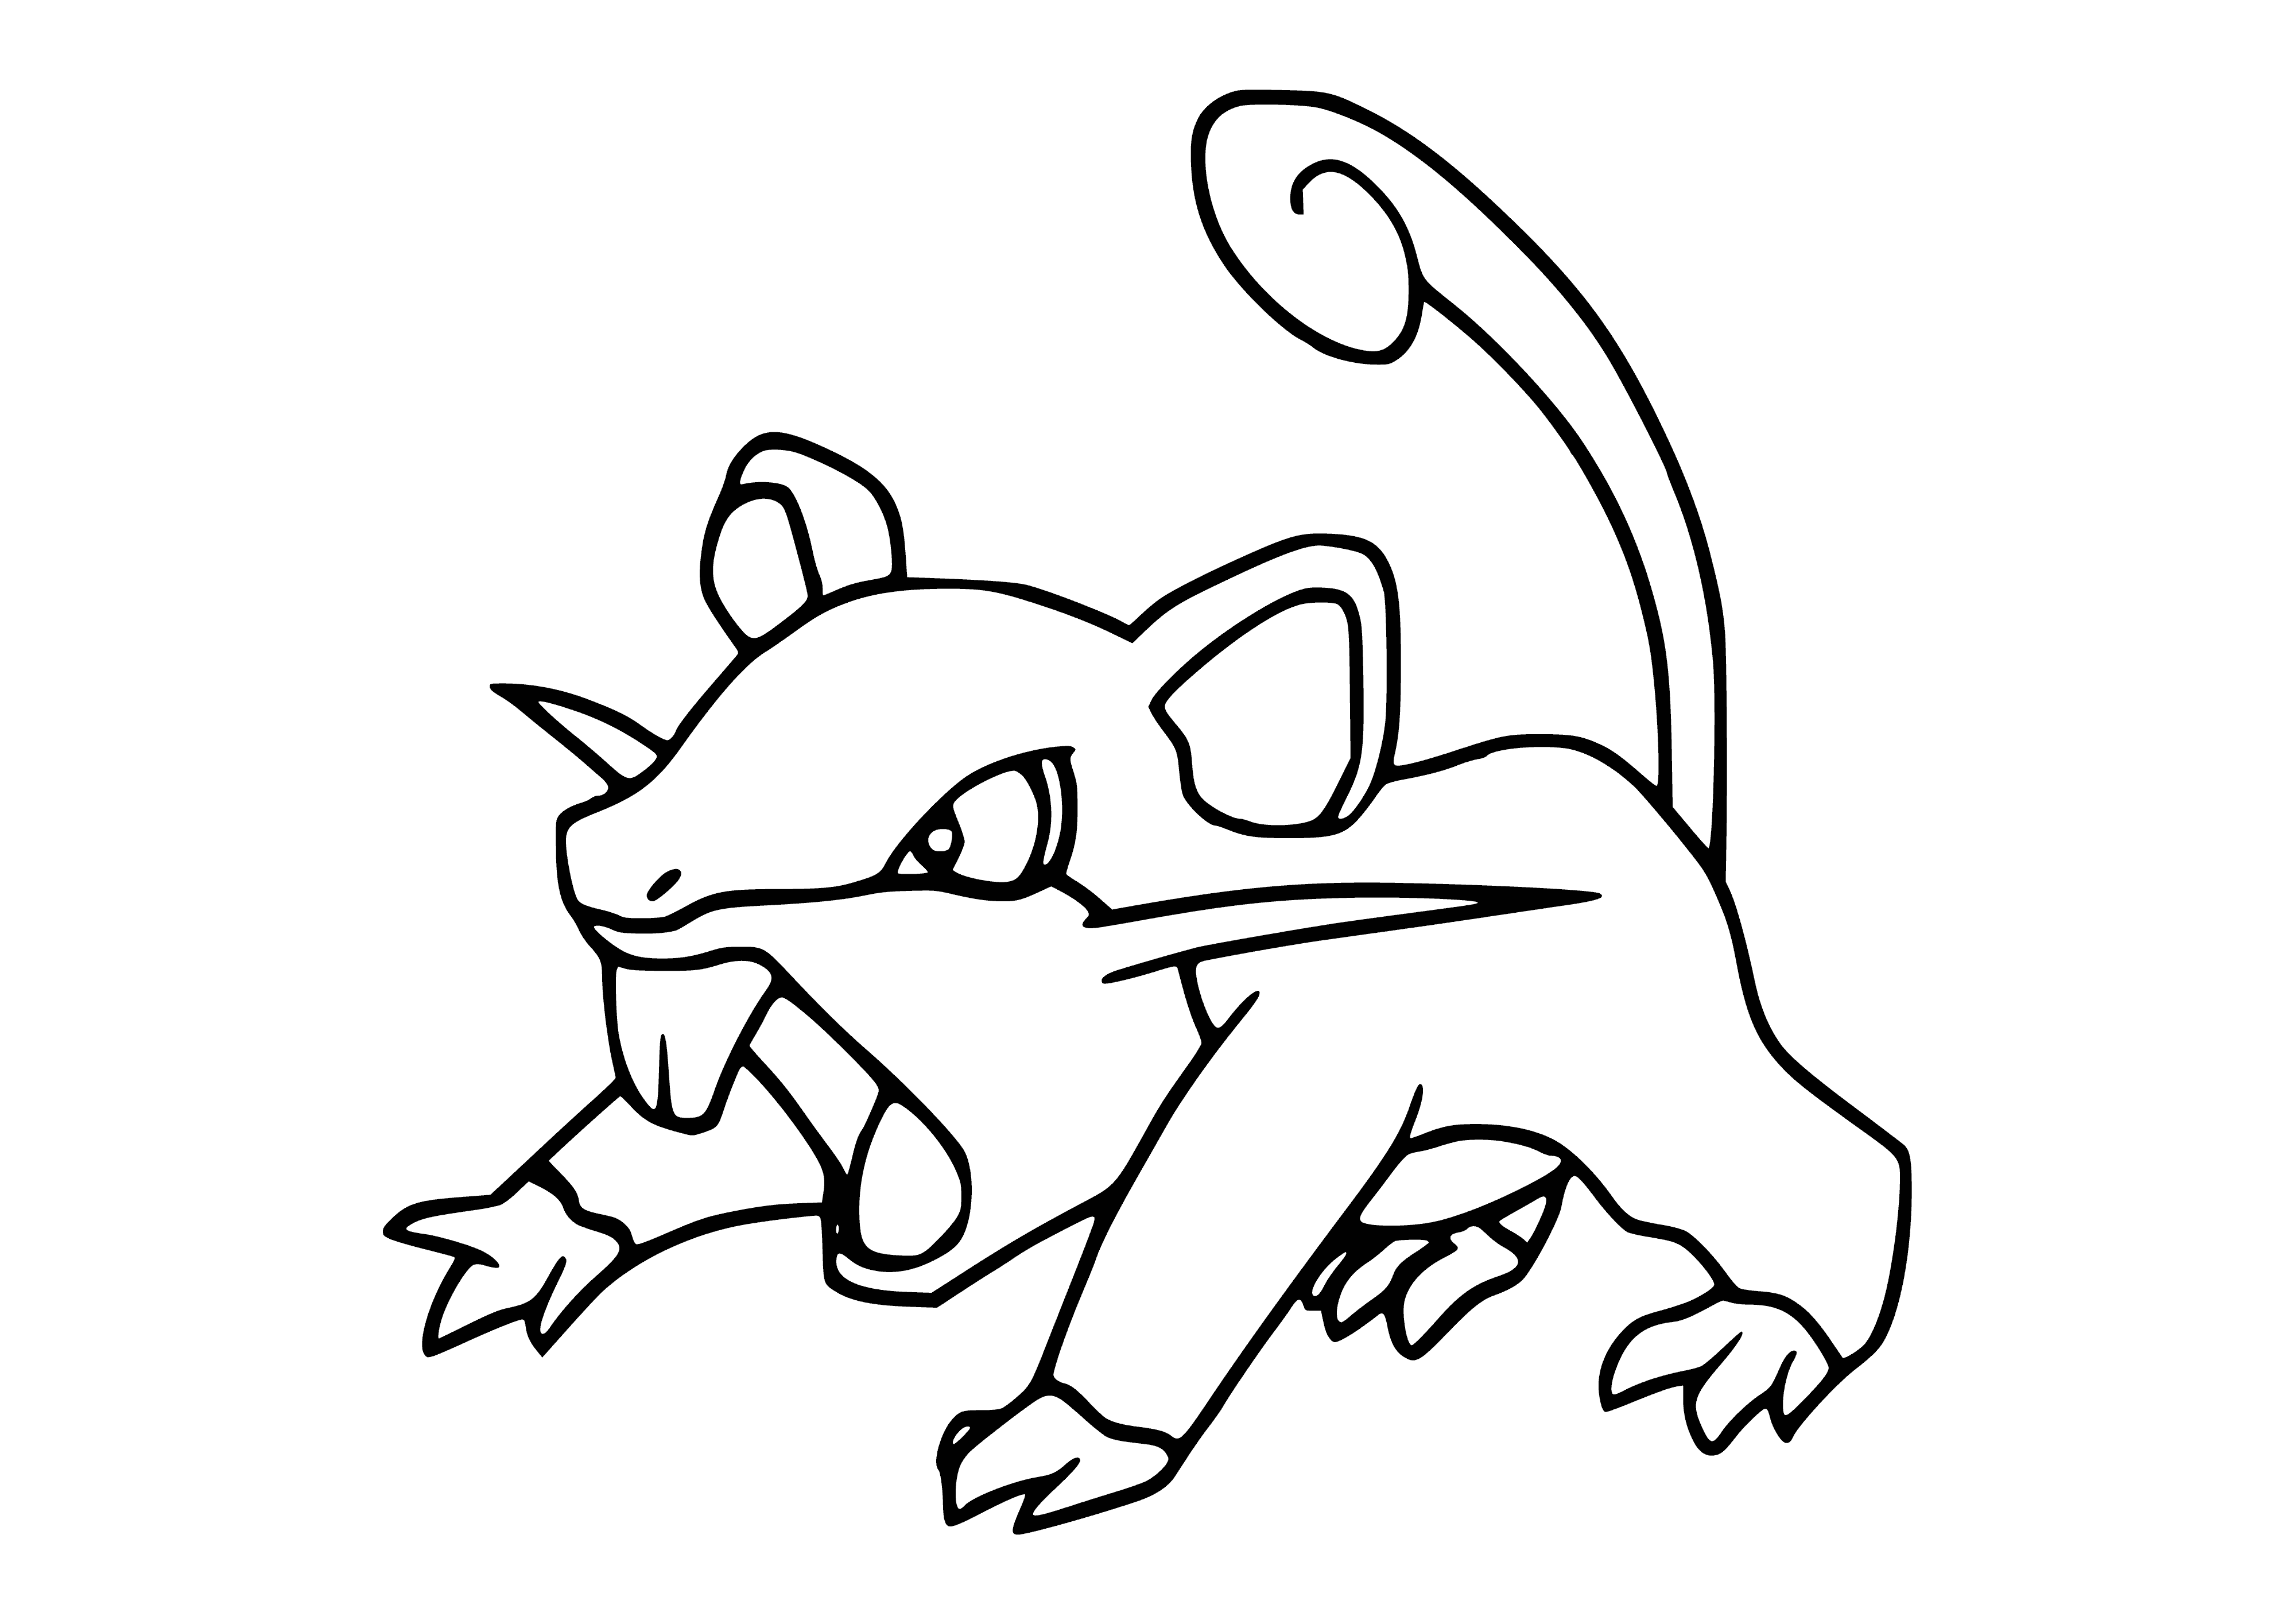 Pokemon Rattata (Rattata) coloring page